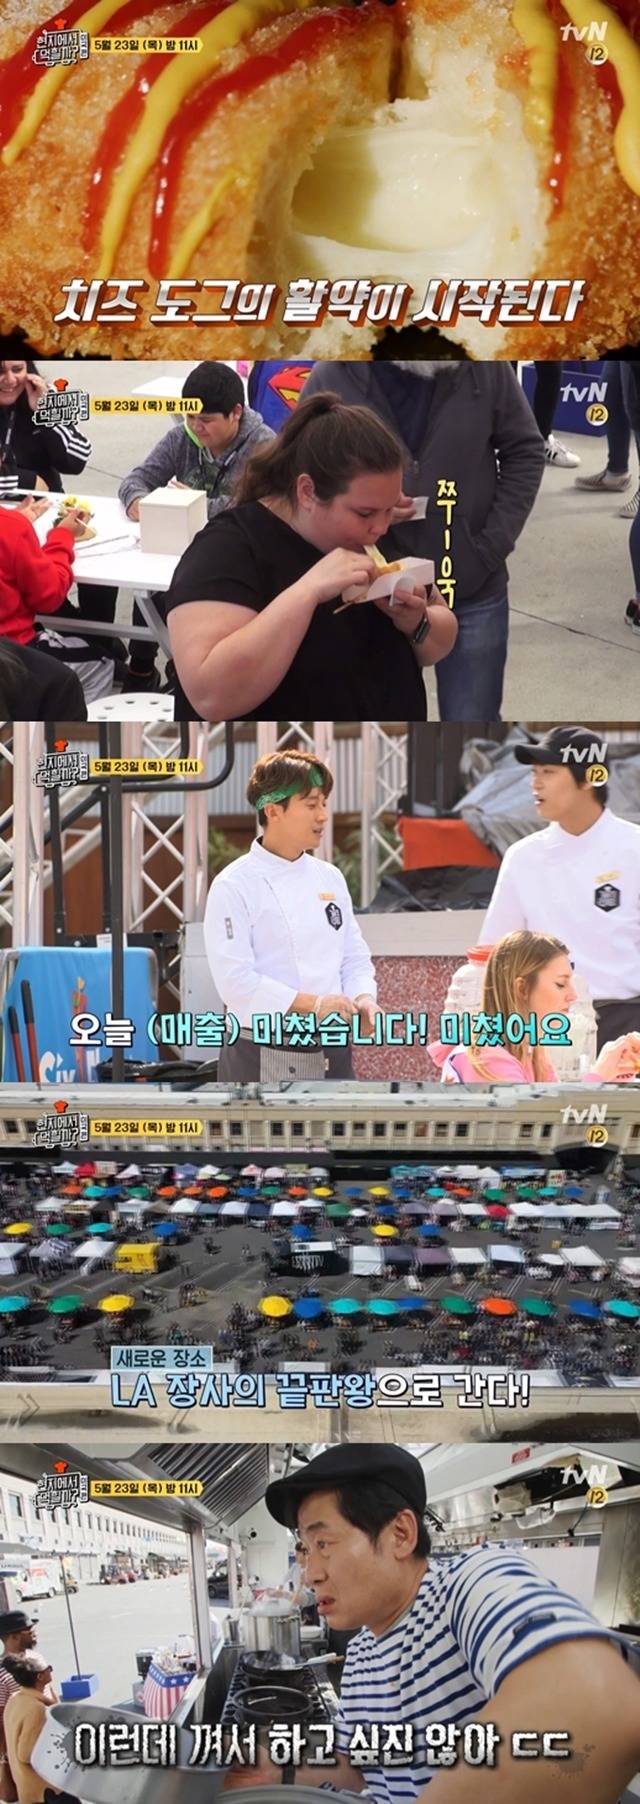 tvN 예능프로그램 현지에서 먹힐까? 미국 편에서는 다양한 한국 음식들이 소개됐다. /tvN 현지에서 먹힐까? 미국 편 화면 캡처